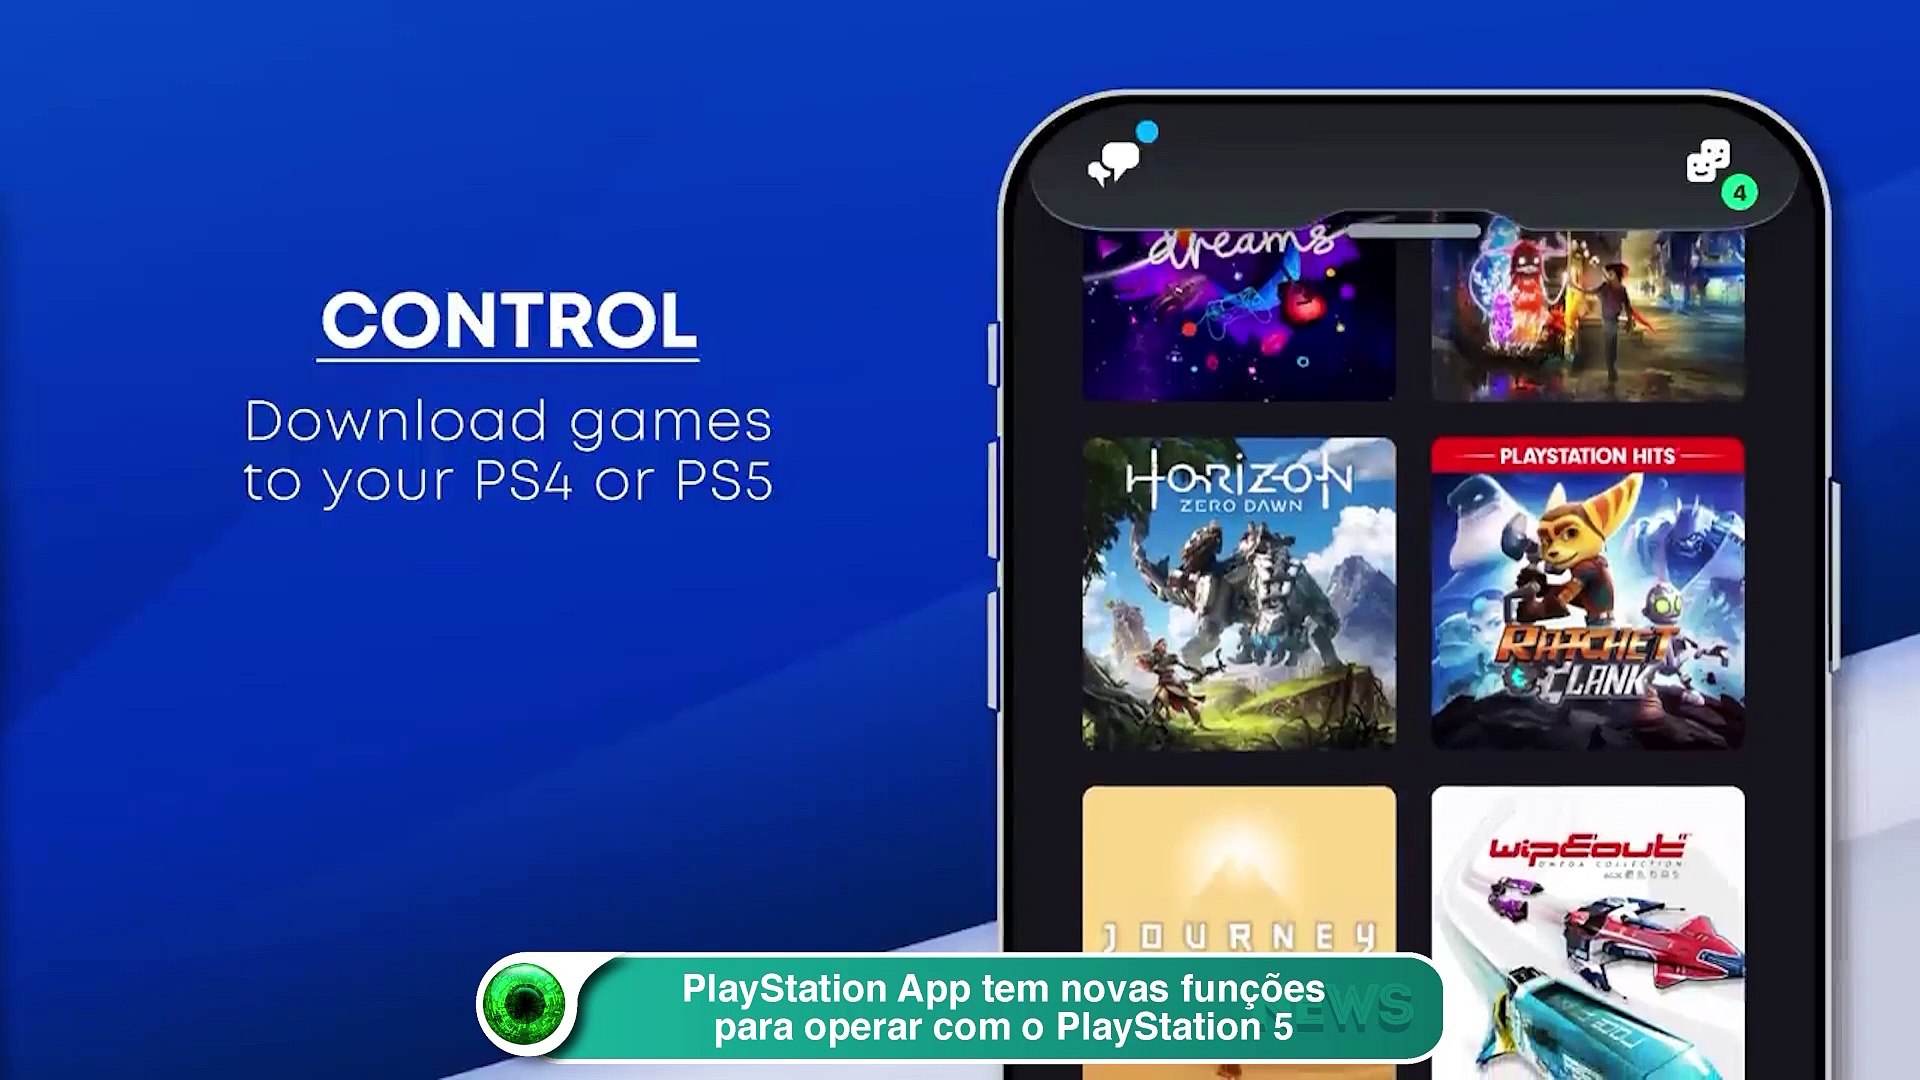 Sony apresenta a app PlayStation com novas funções para a PS5